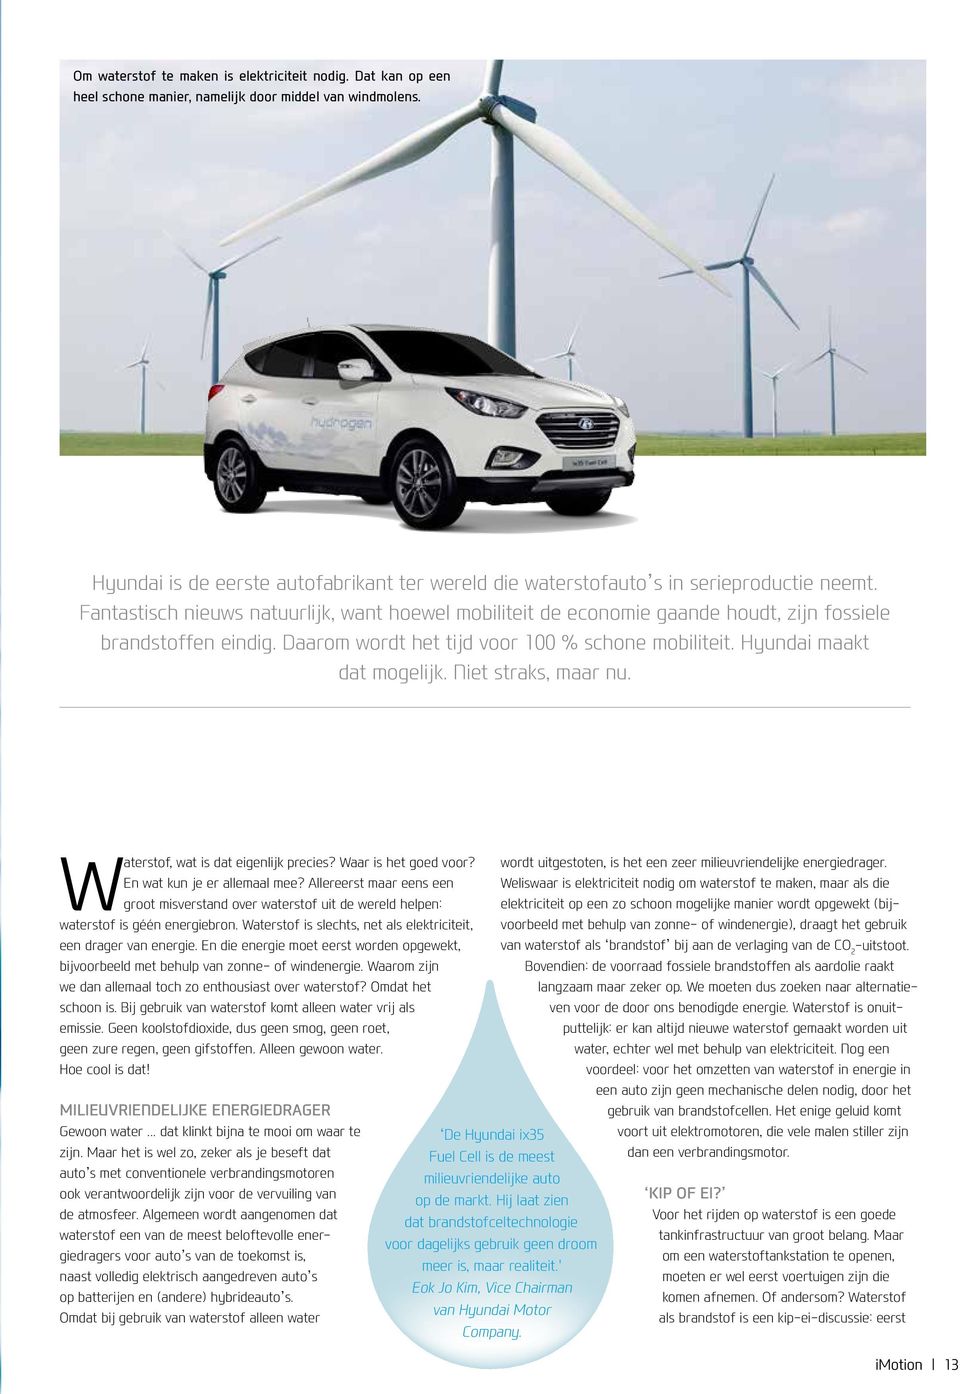 Fantastisch nieuws natuurlijk, want hoewel mobiliteit de economie gaande houdt, zijn fossiele brandstoffen eindig. Daarom wordt het tijd voor 100 % schone mobiliteit. Hyundai maakt dat mogelijk.